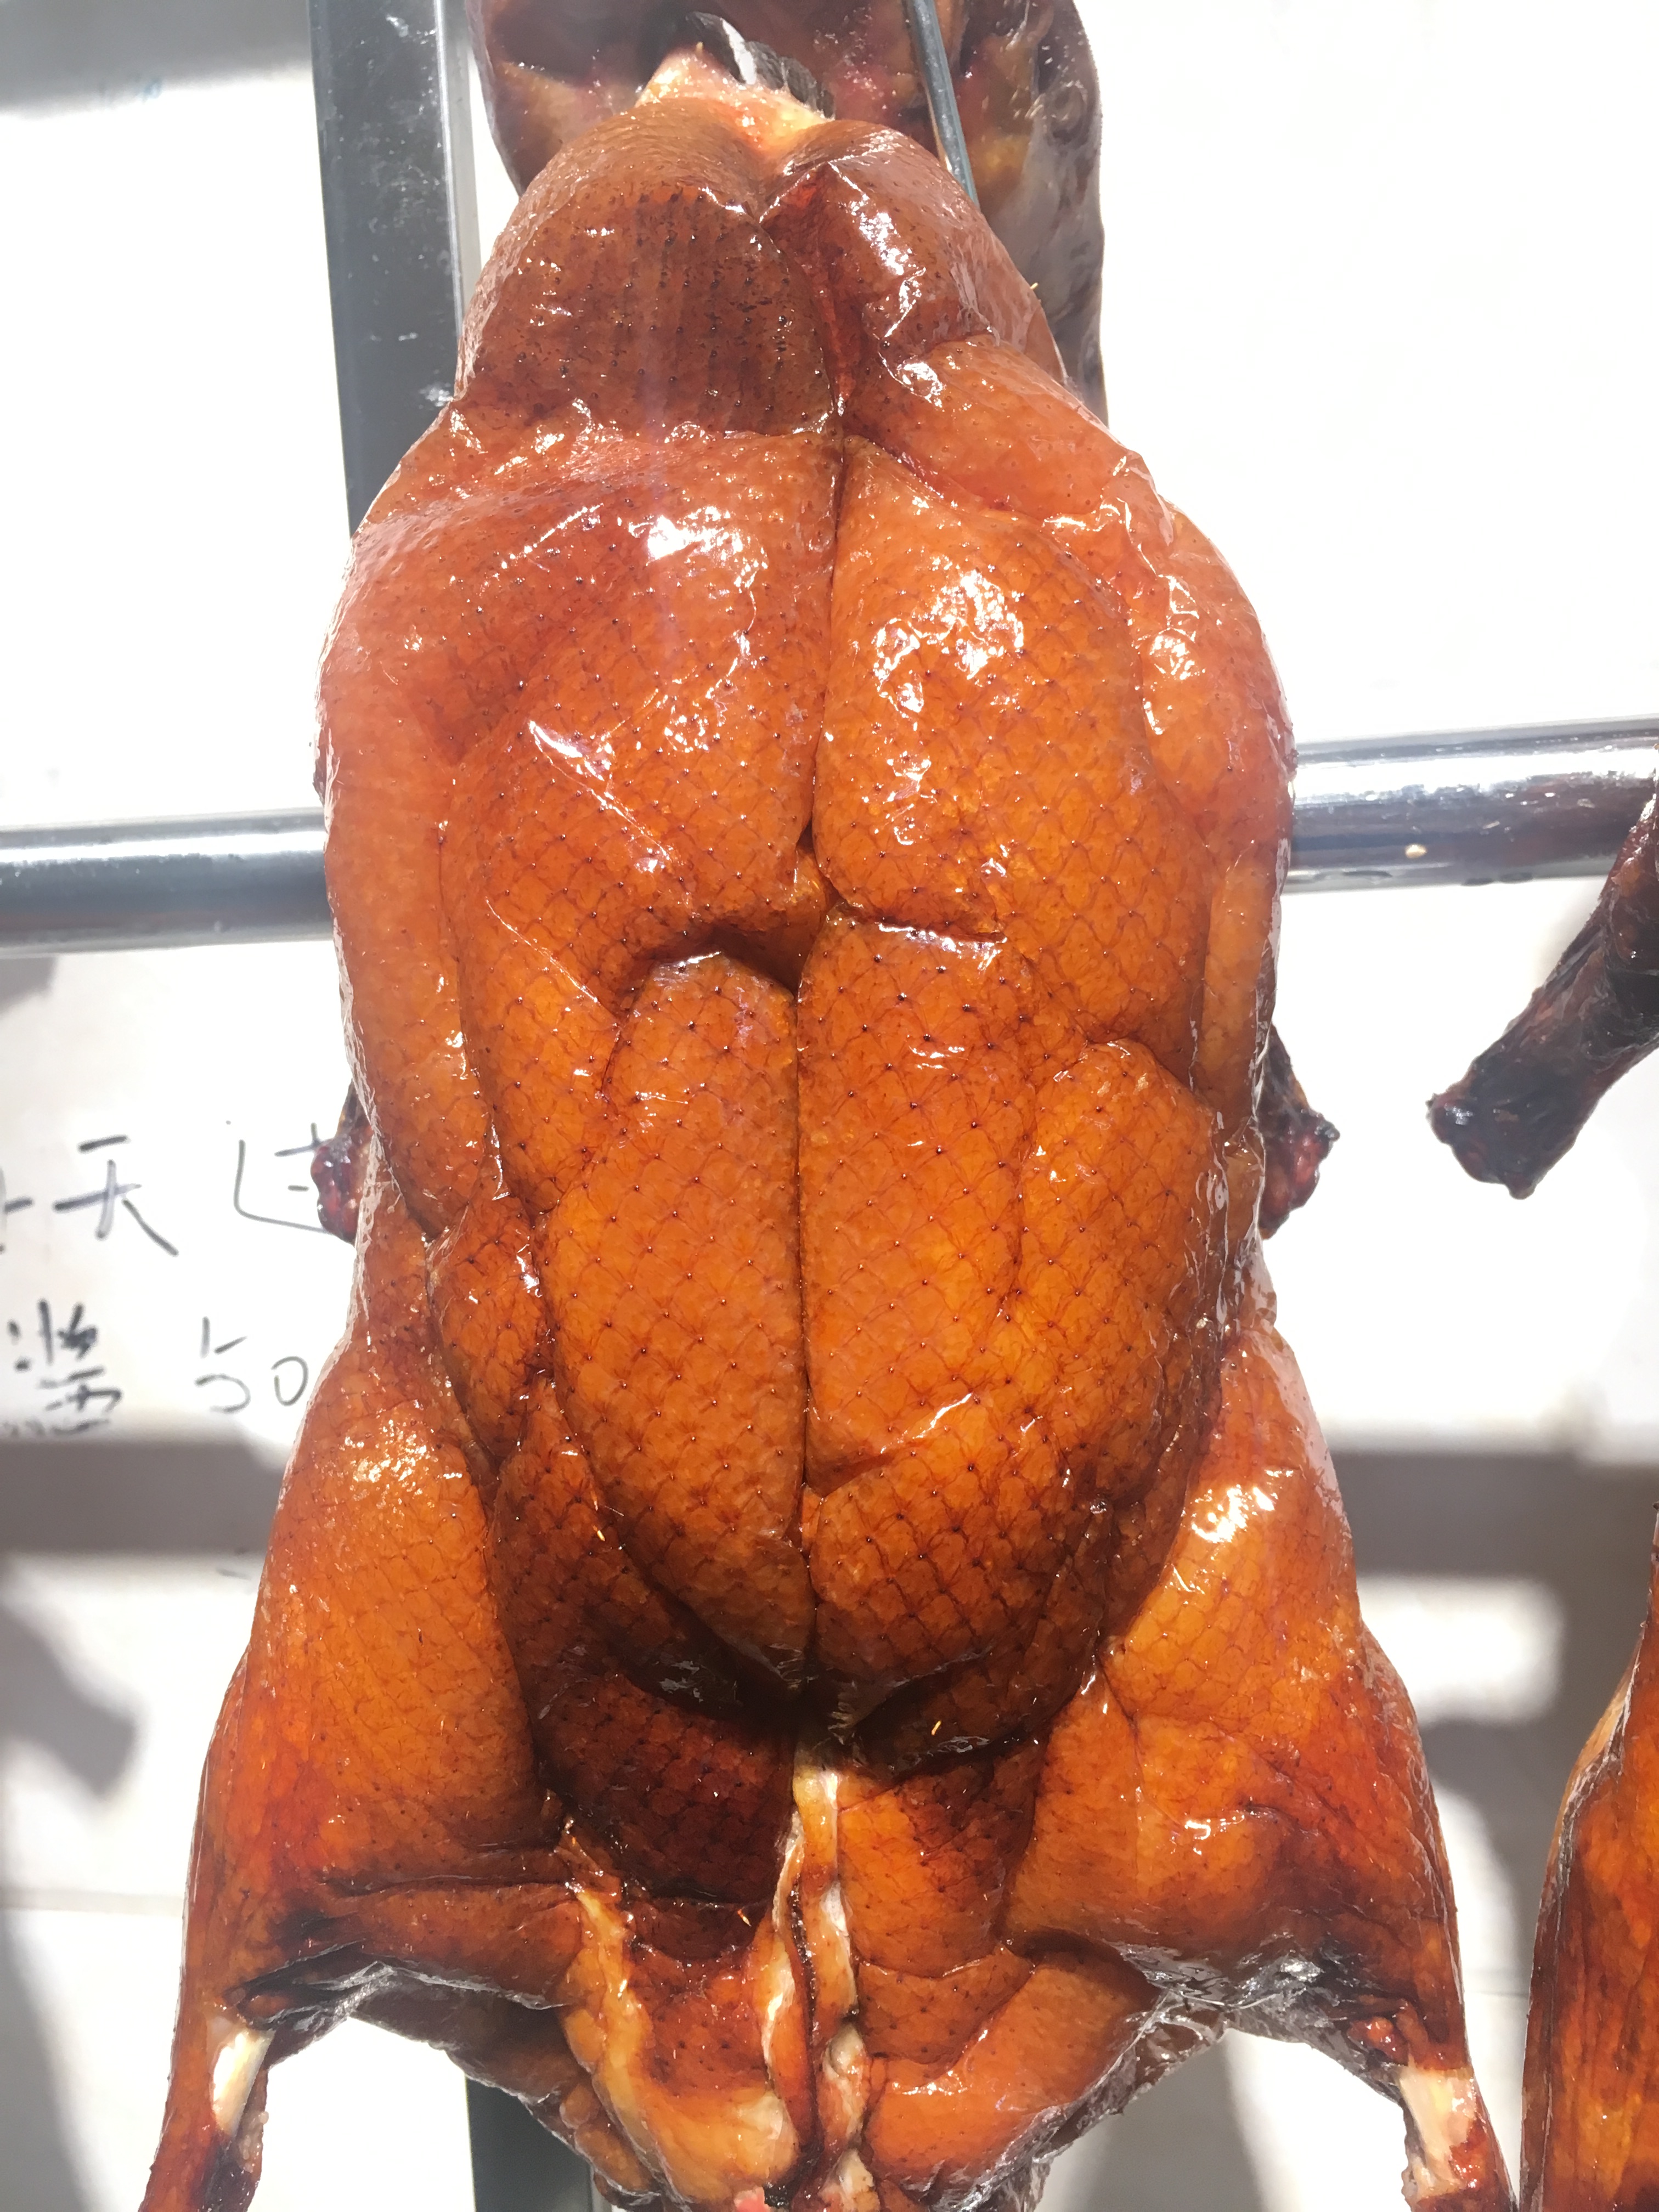 为什么那么多人喜欢吃广式烧鸭呢